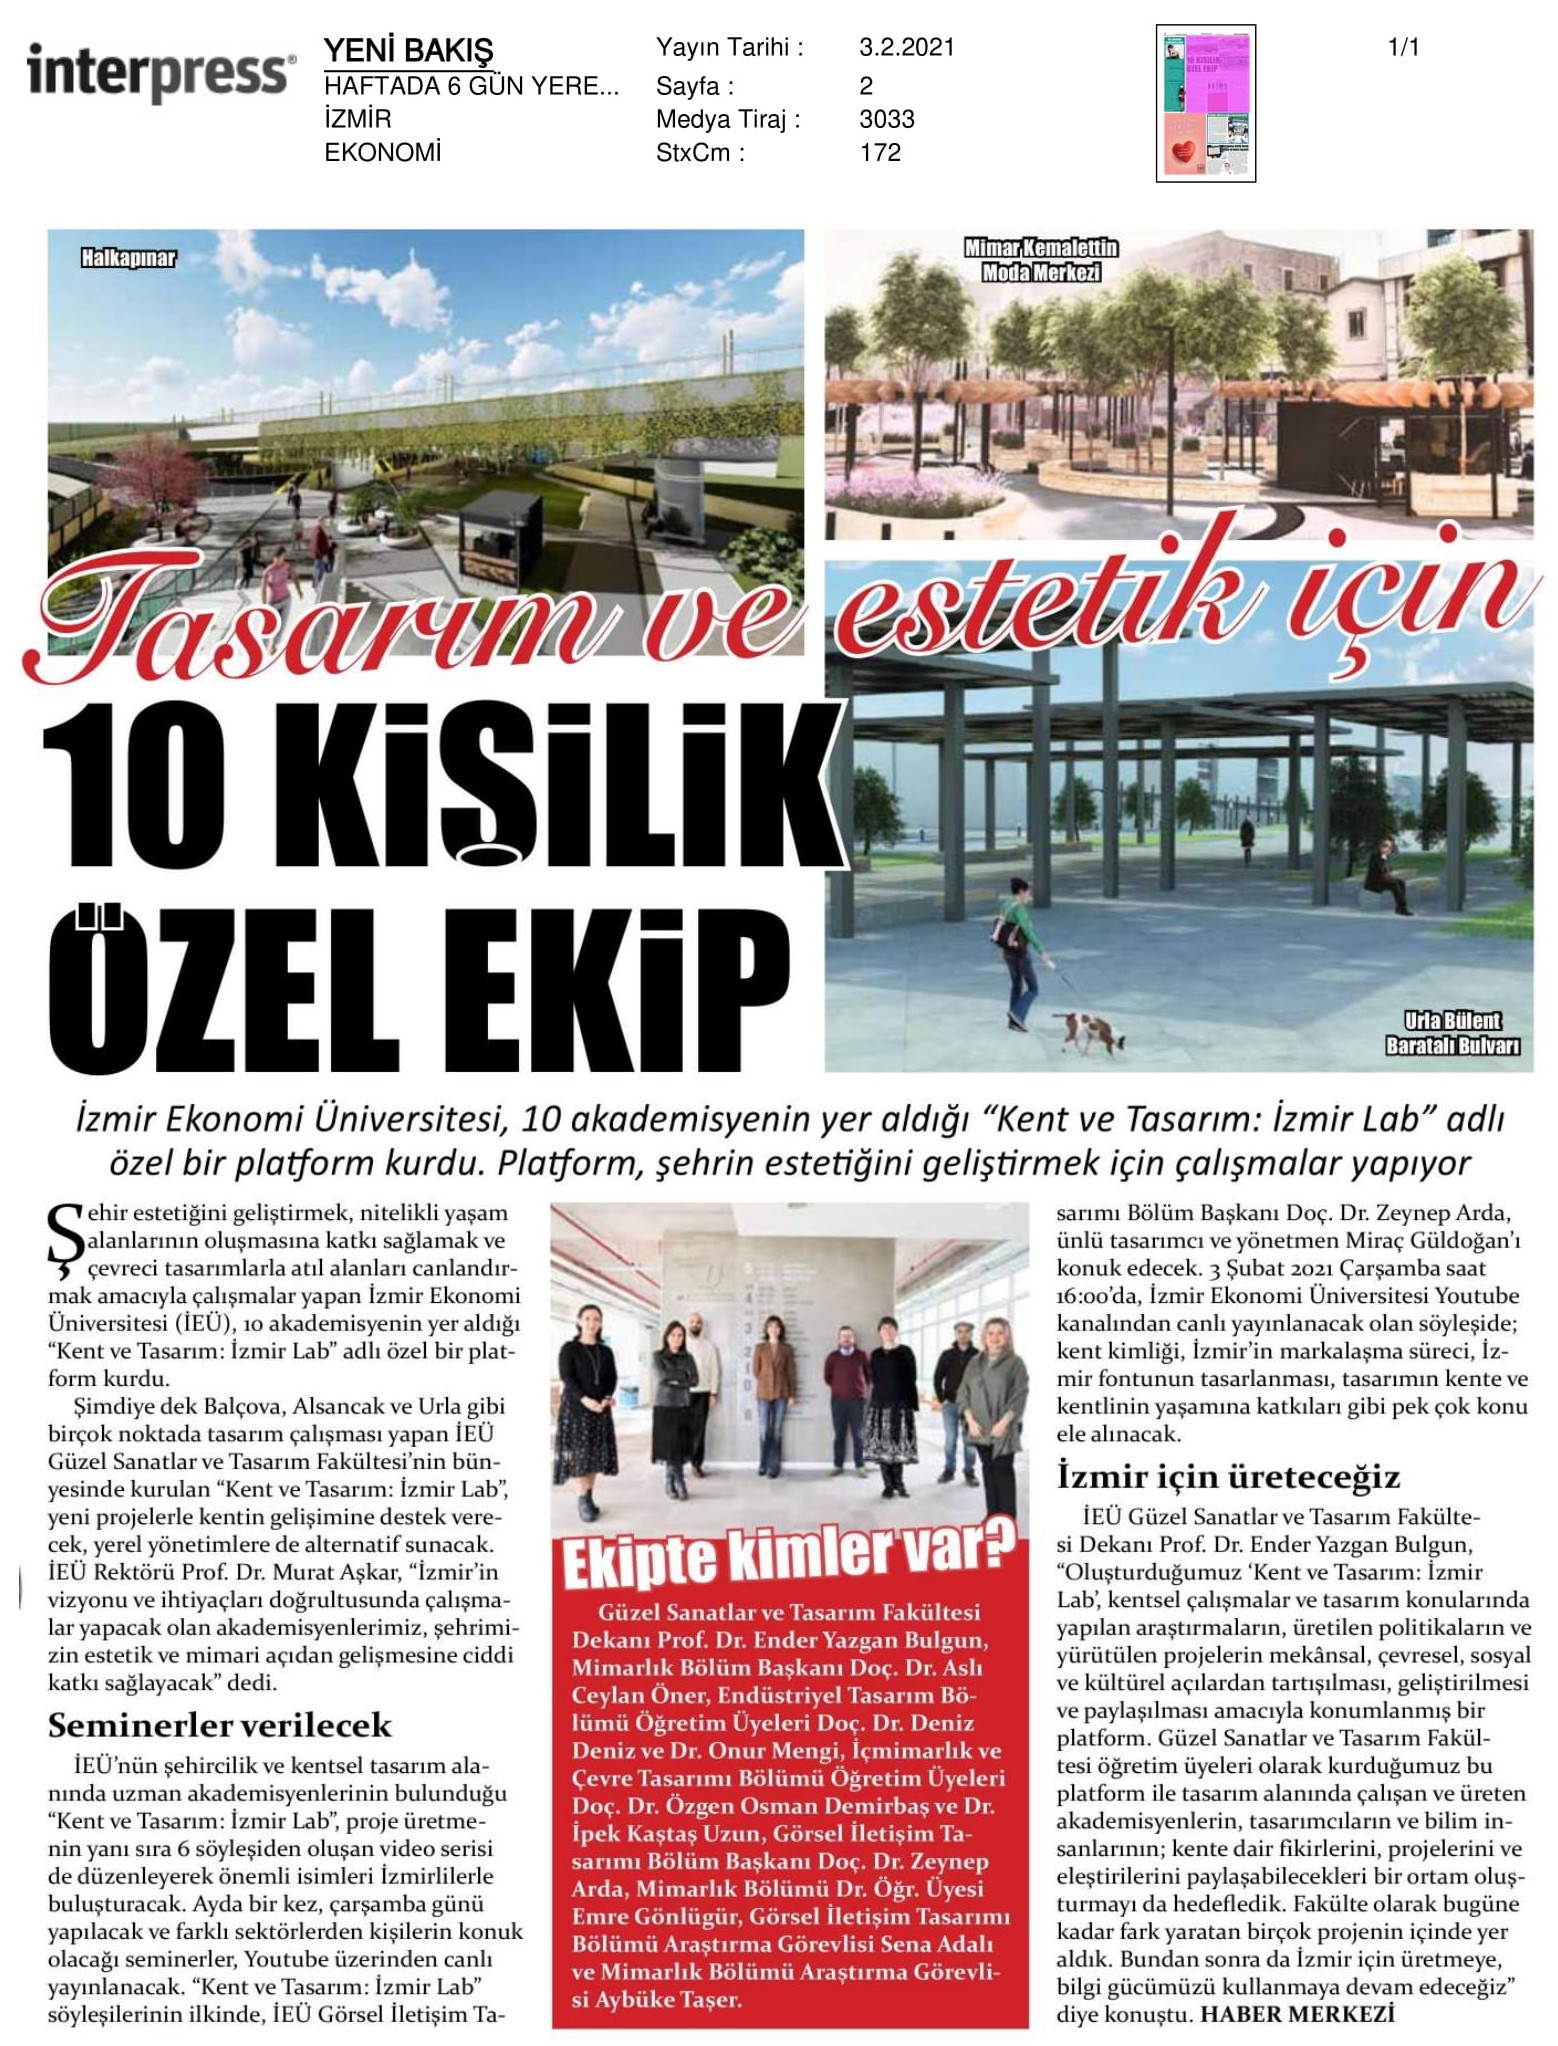 Tasarım ve estetik için ‘Kent ve Tasarım: İzmir Lab’